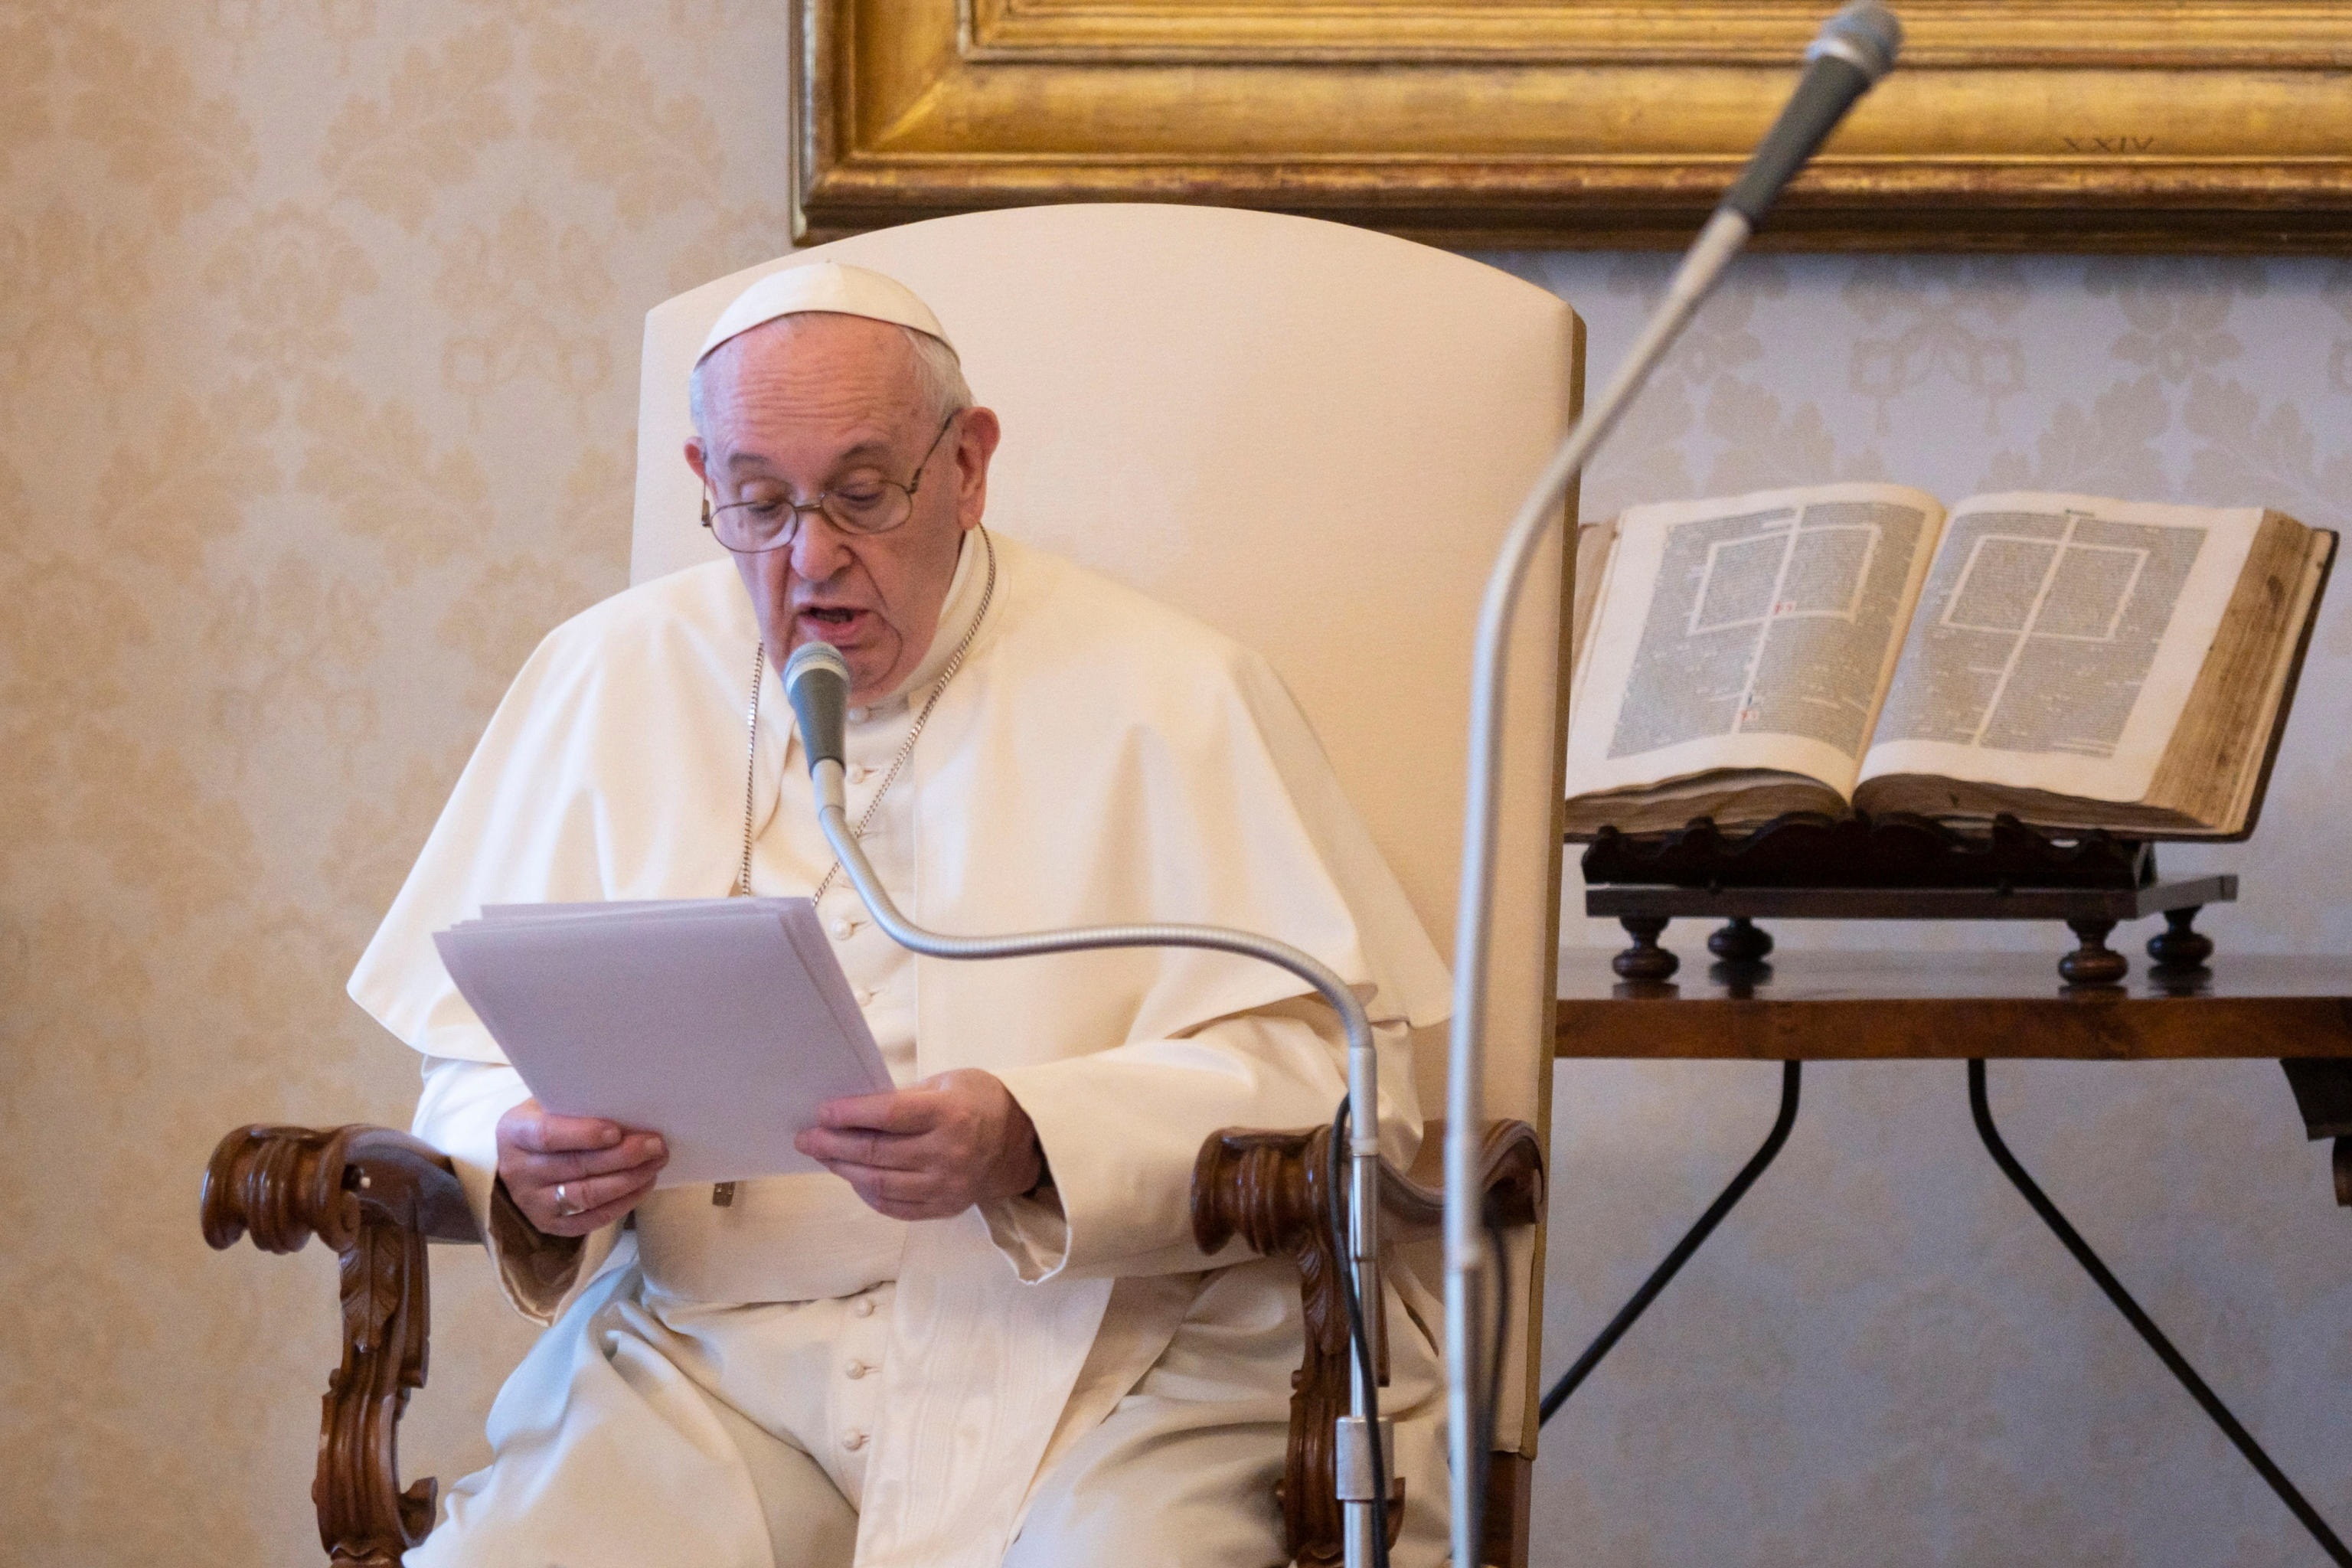 El papa Francisco afirma que los placeres de comer y sexual son “simplemente divinos”